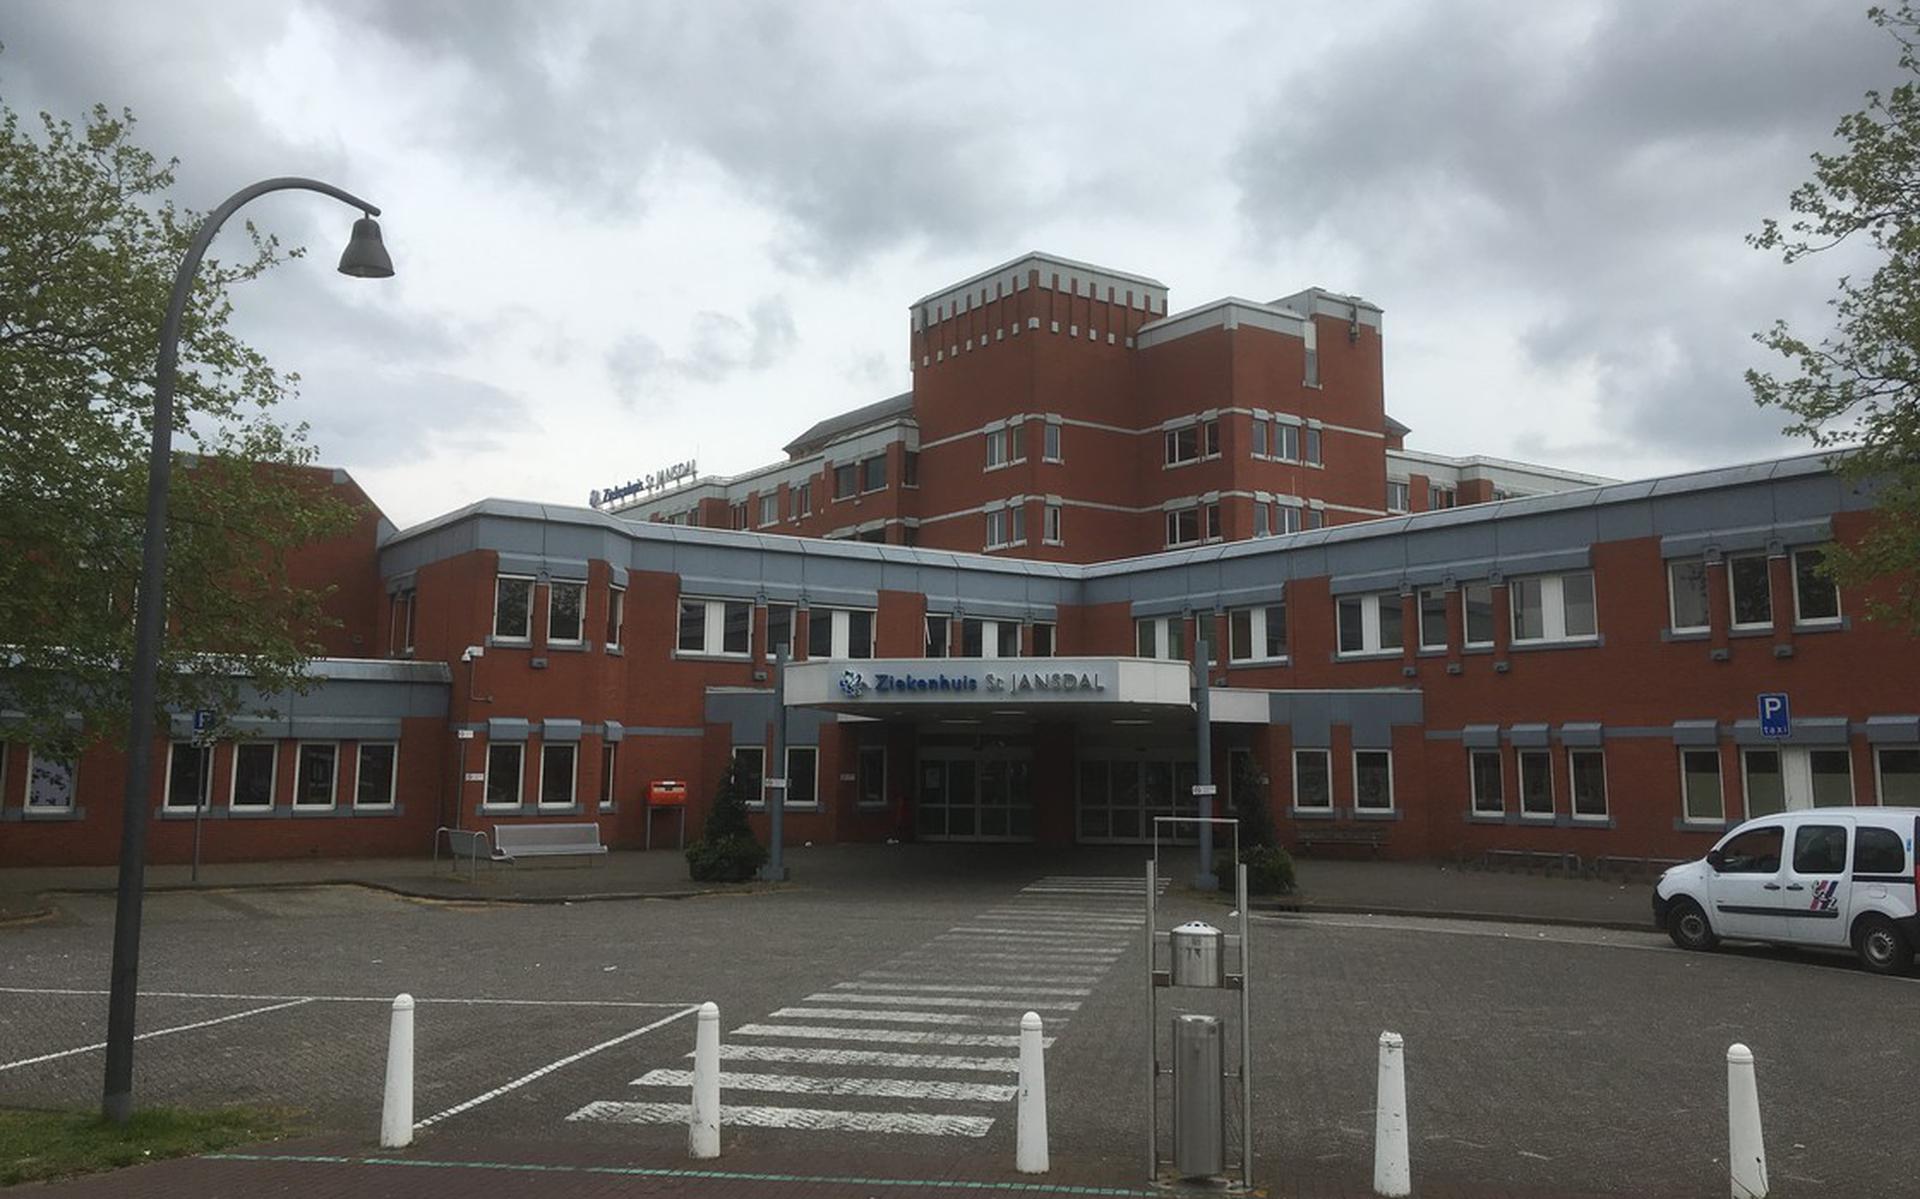 Ziekenhuis St Jansdal in Lelystad.